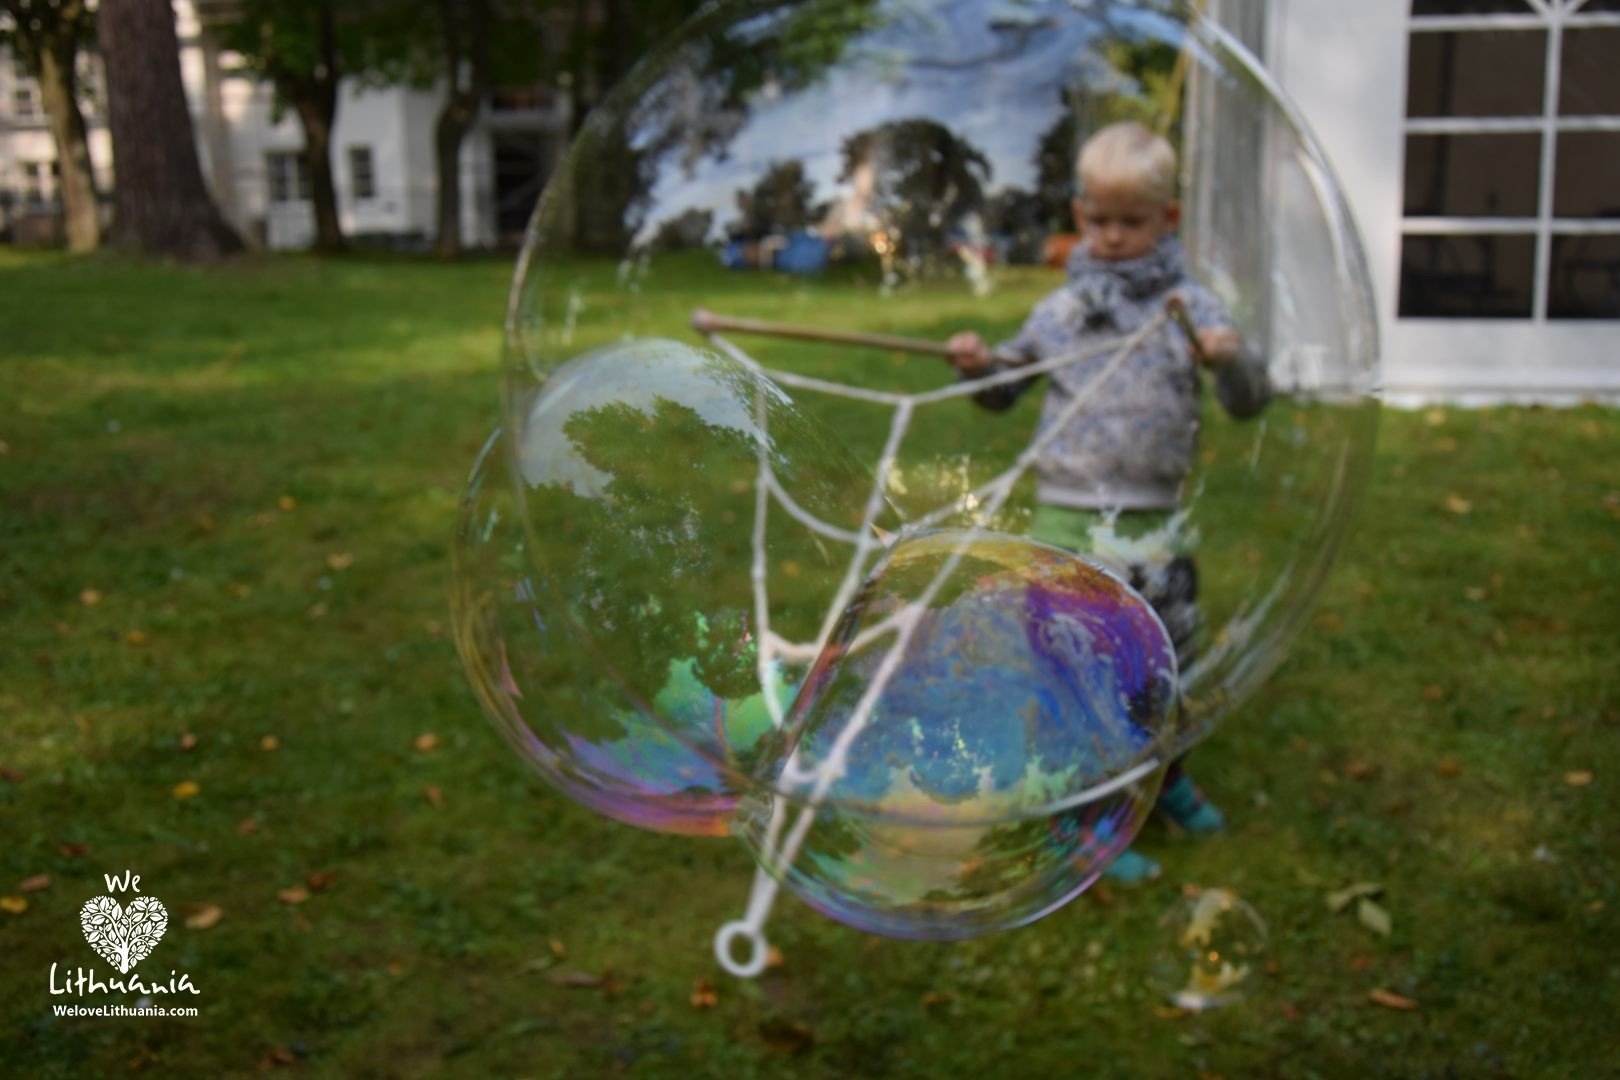 Birštone vykusio diskusijų festivalio "Būtent"  akimirkos vaikų-burbulų linksmybės.